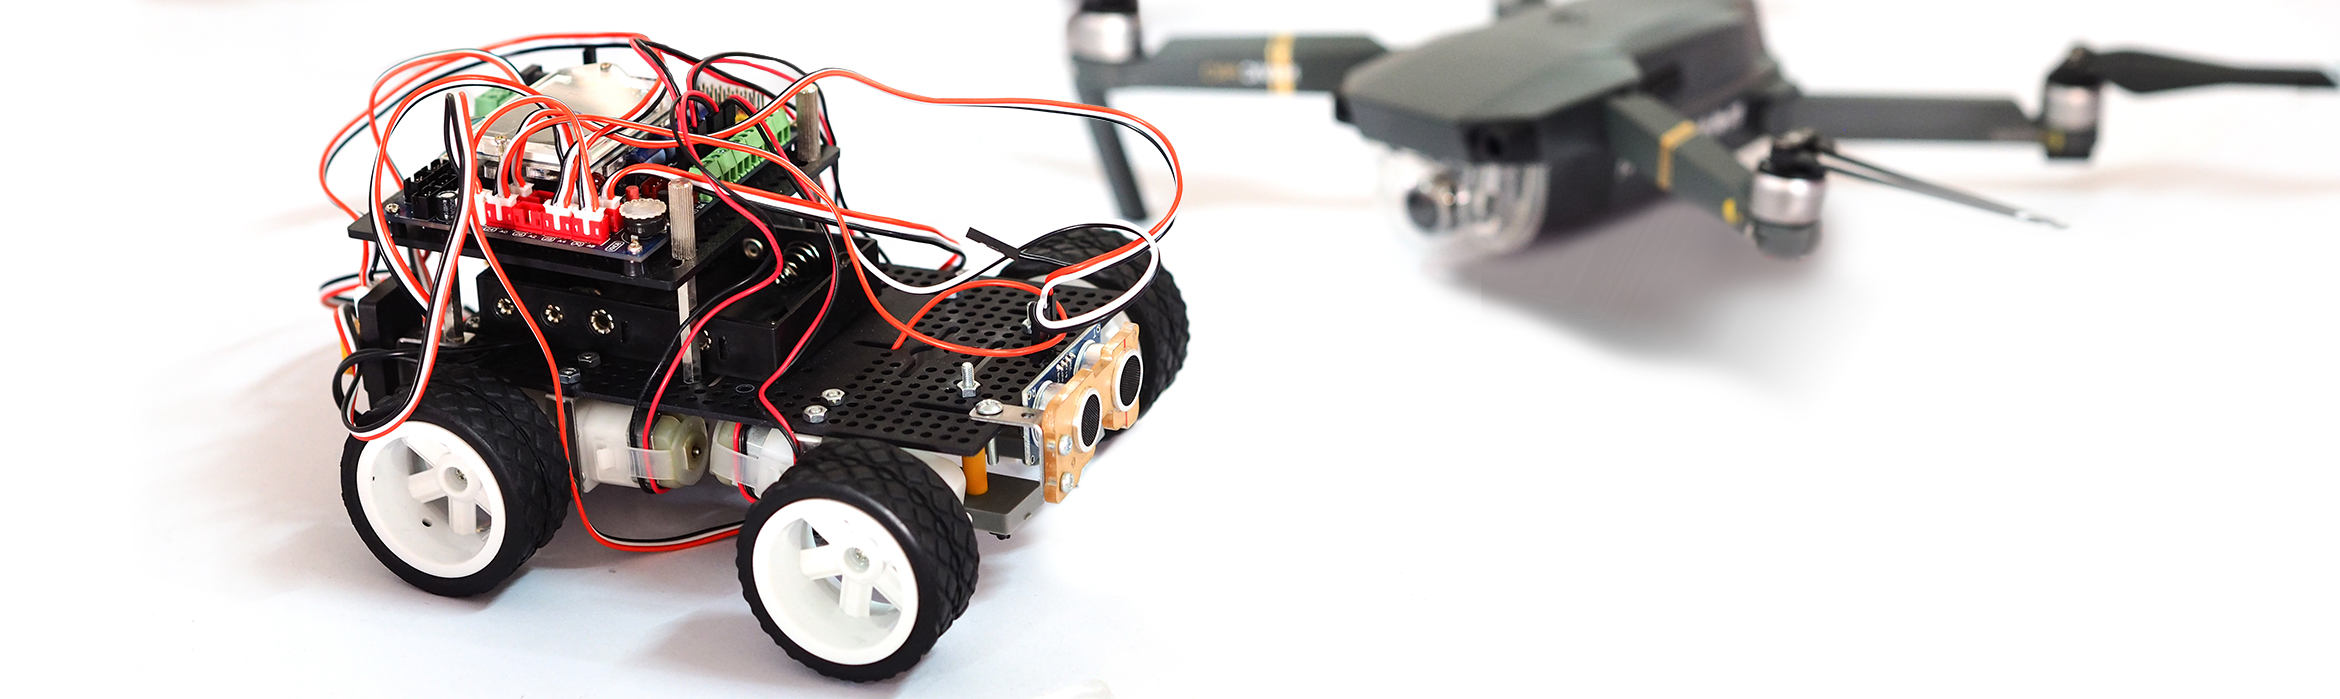 La imagen muestra un dron así como un vehículo formado por diversos componentes electrónicos